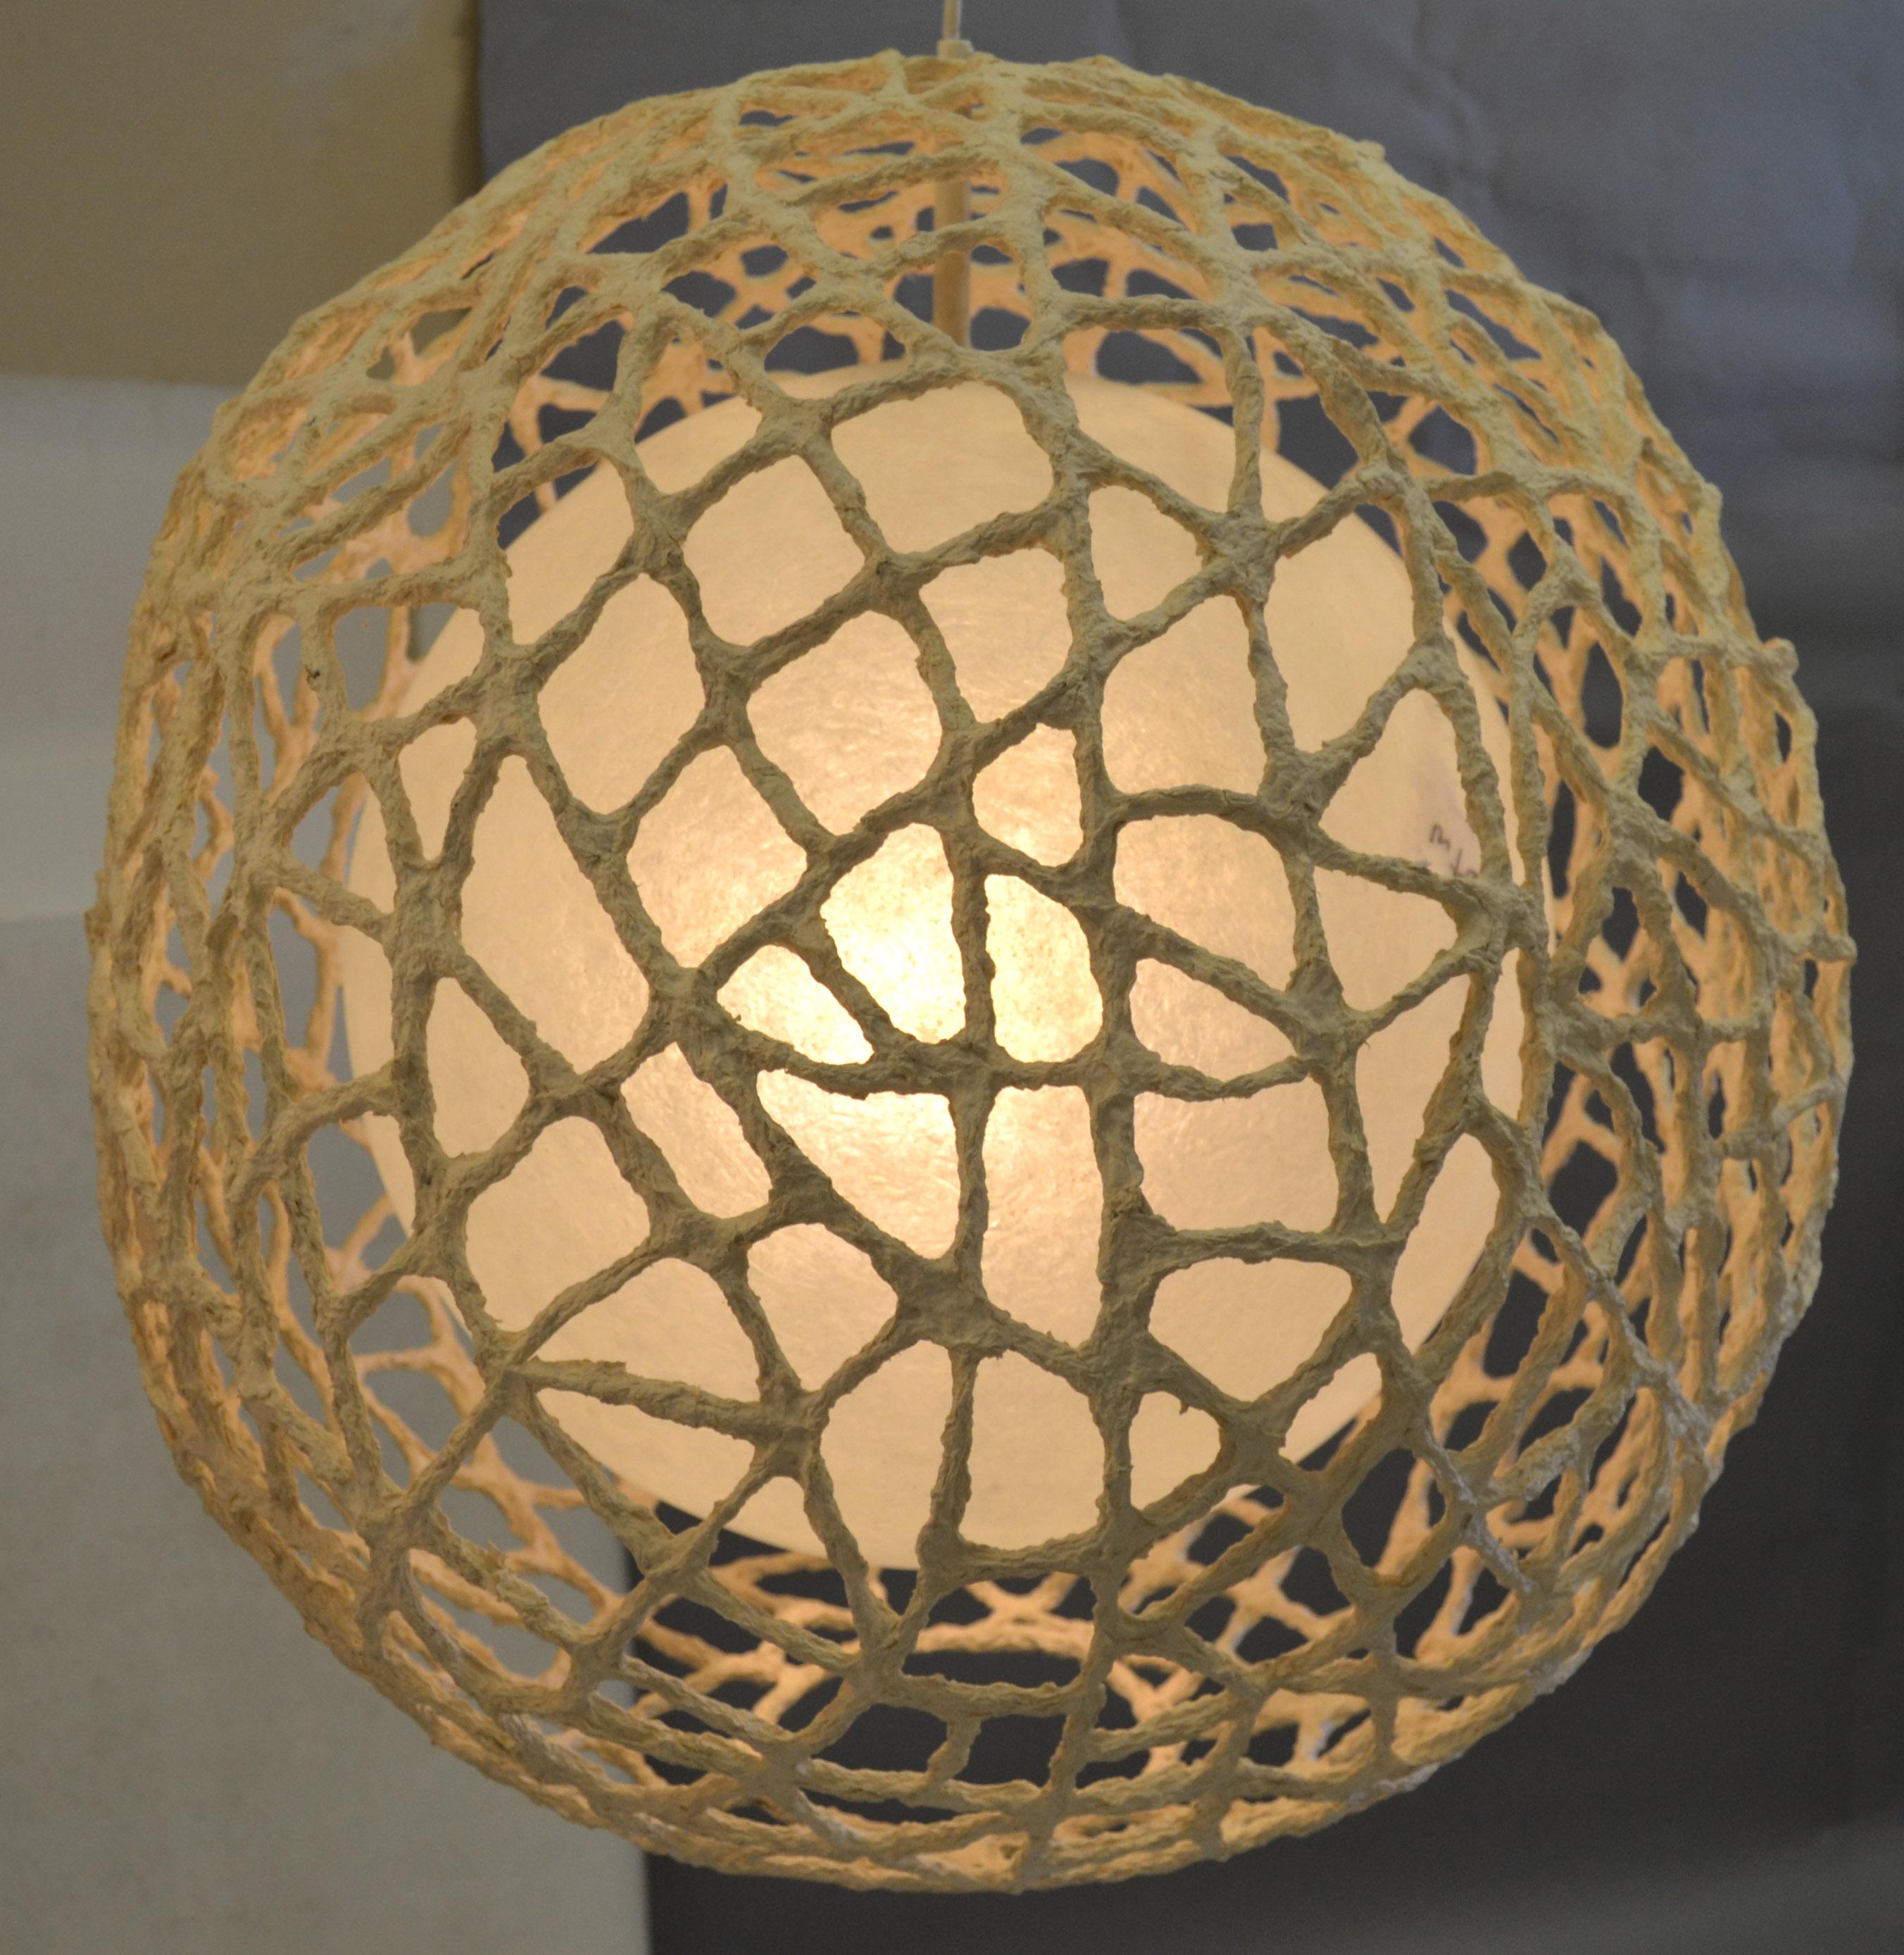 1980 Space Age Tan Fiberglass Paper Mache Spheres Pendant Lamp Light Fixture For Sale 1